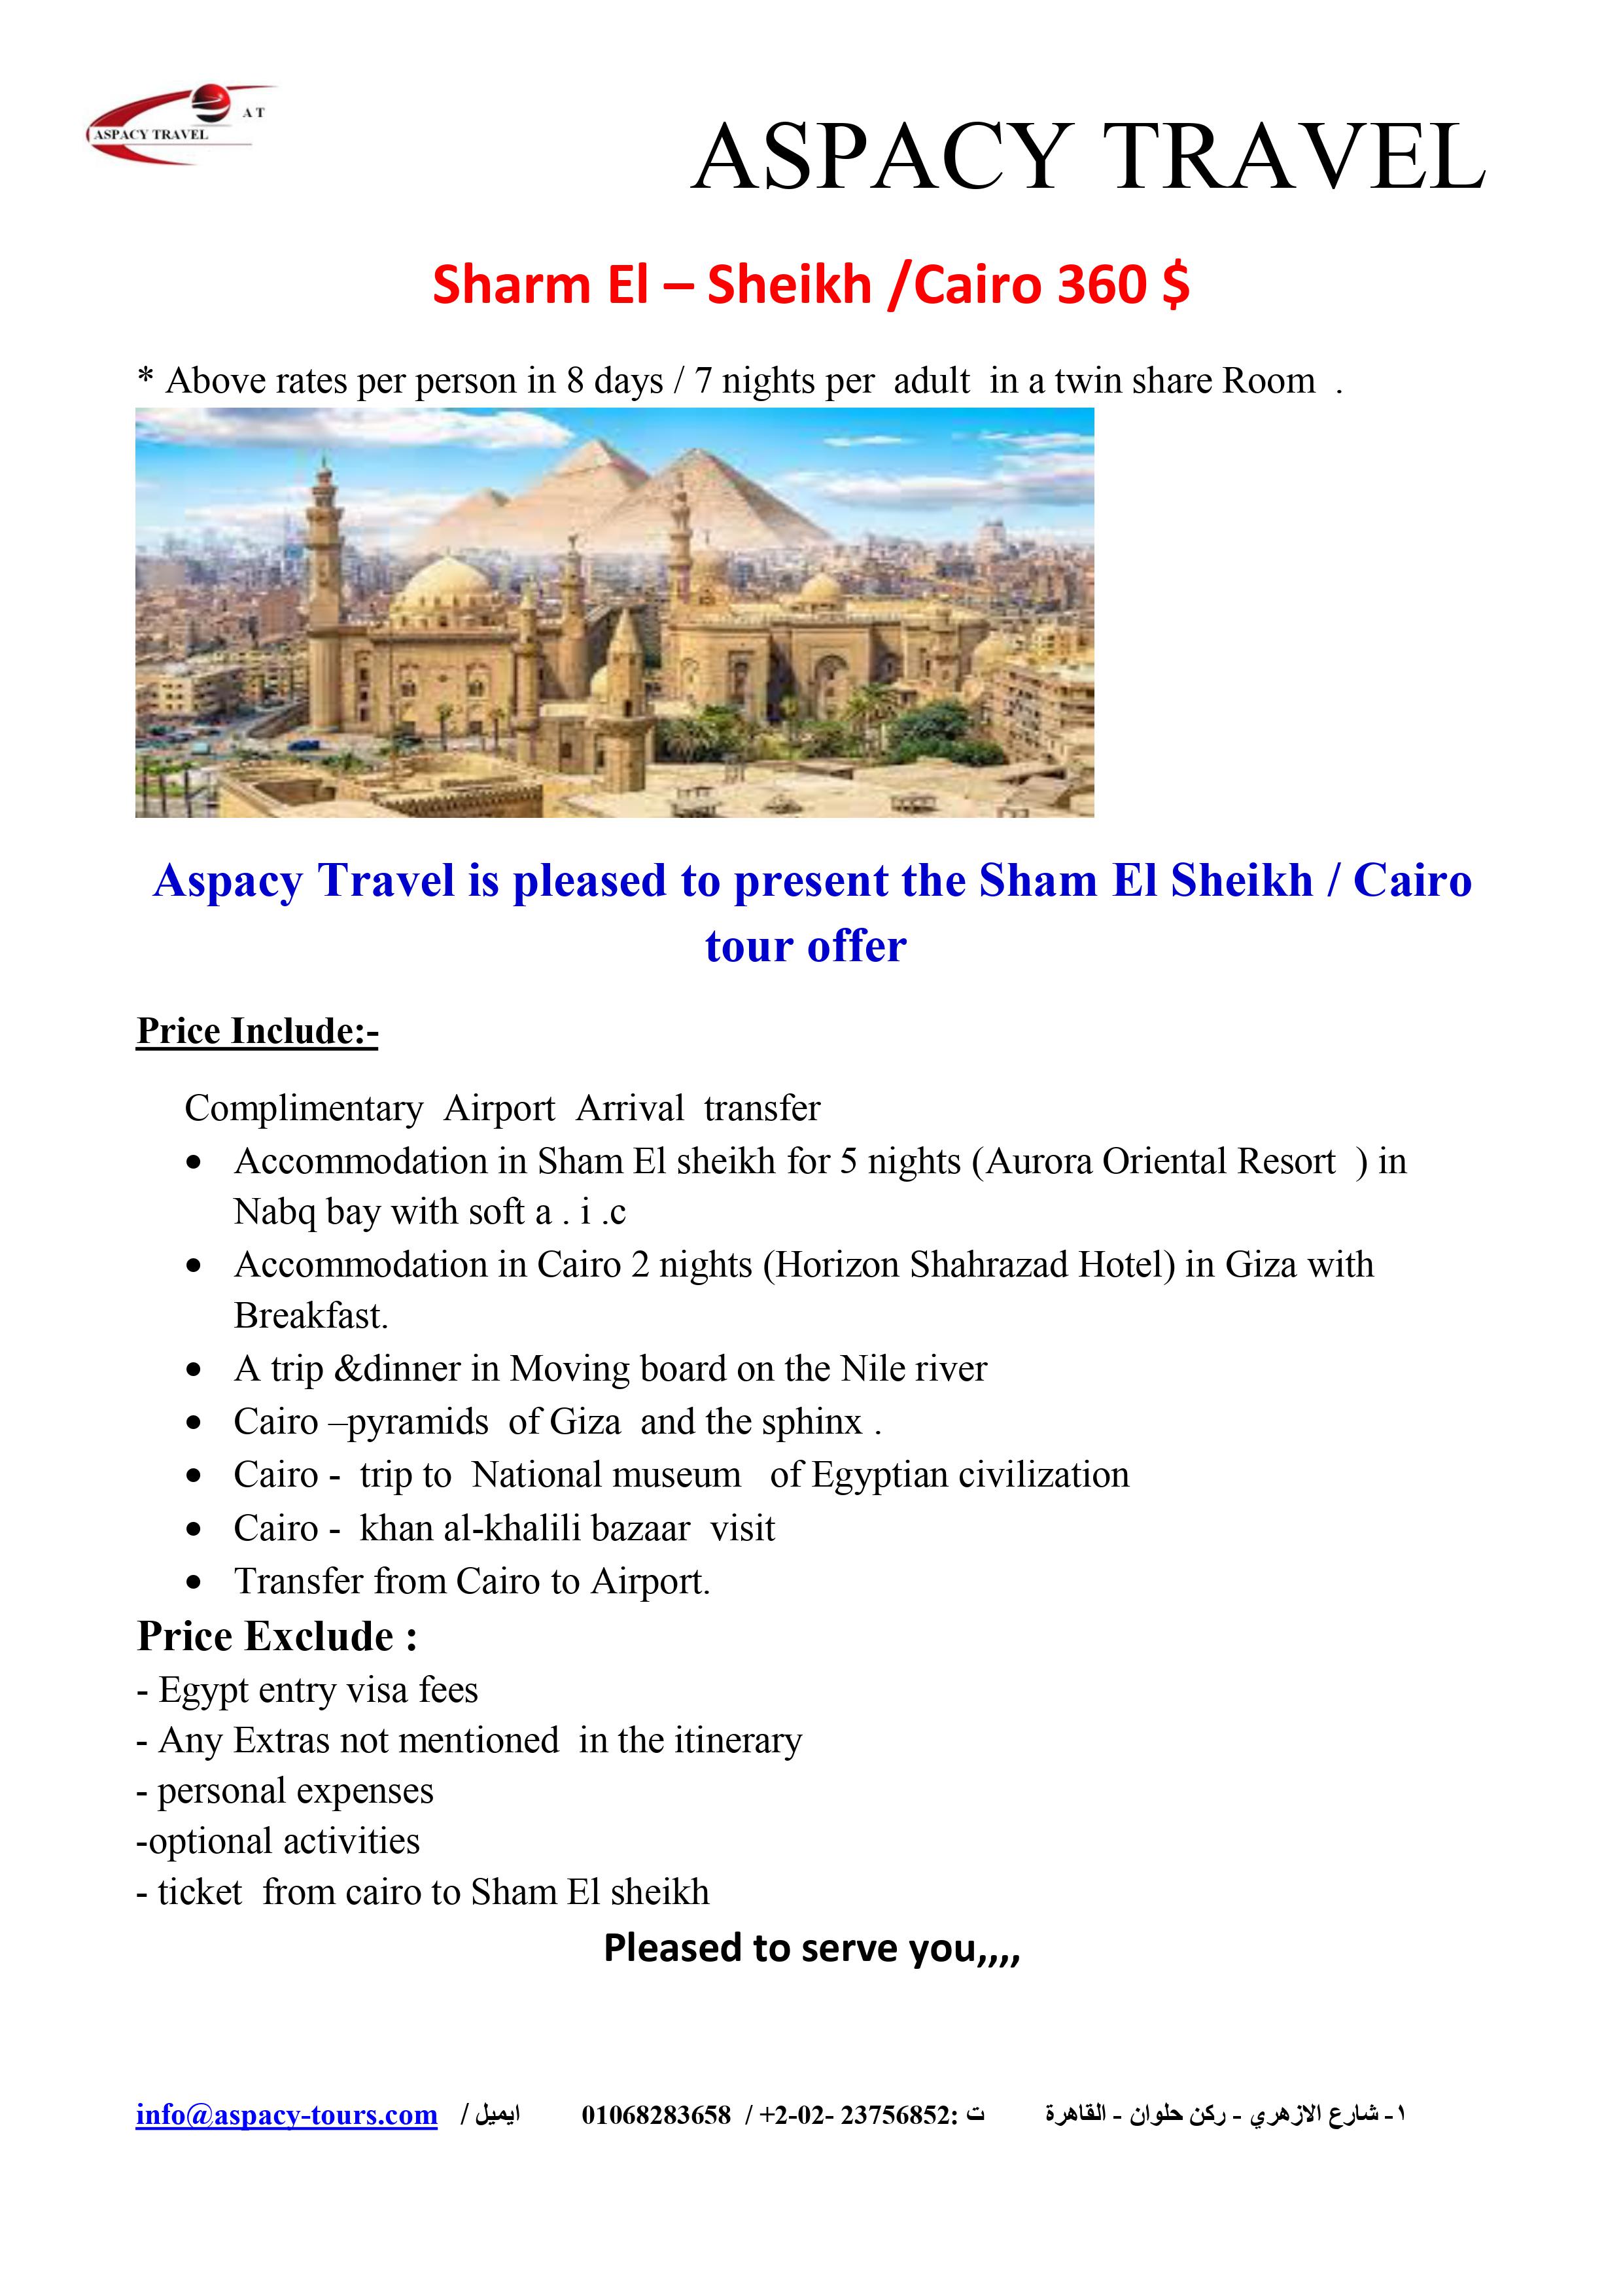 Visit Cairo & sharm el-sheikh